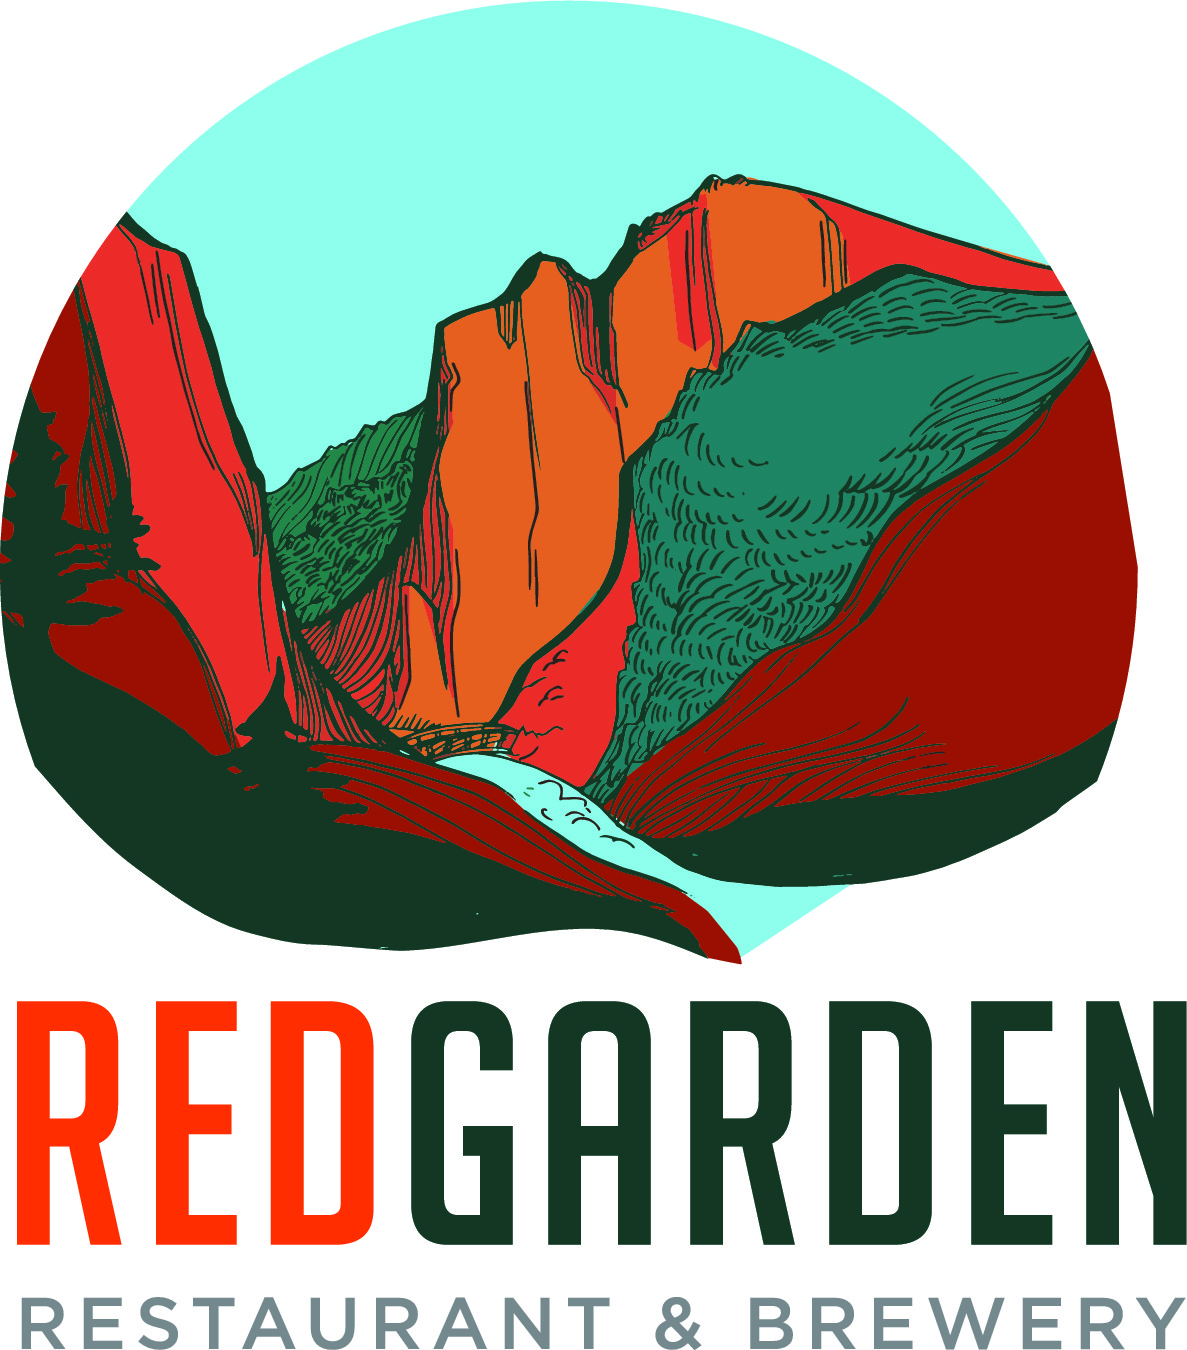 Redgarden_Final_Logo_Lynnillustration.jpg